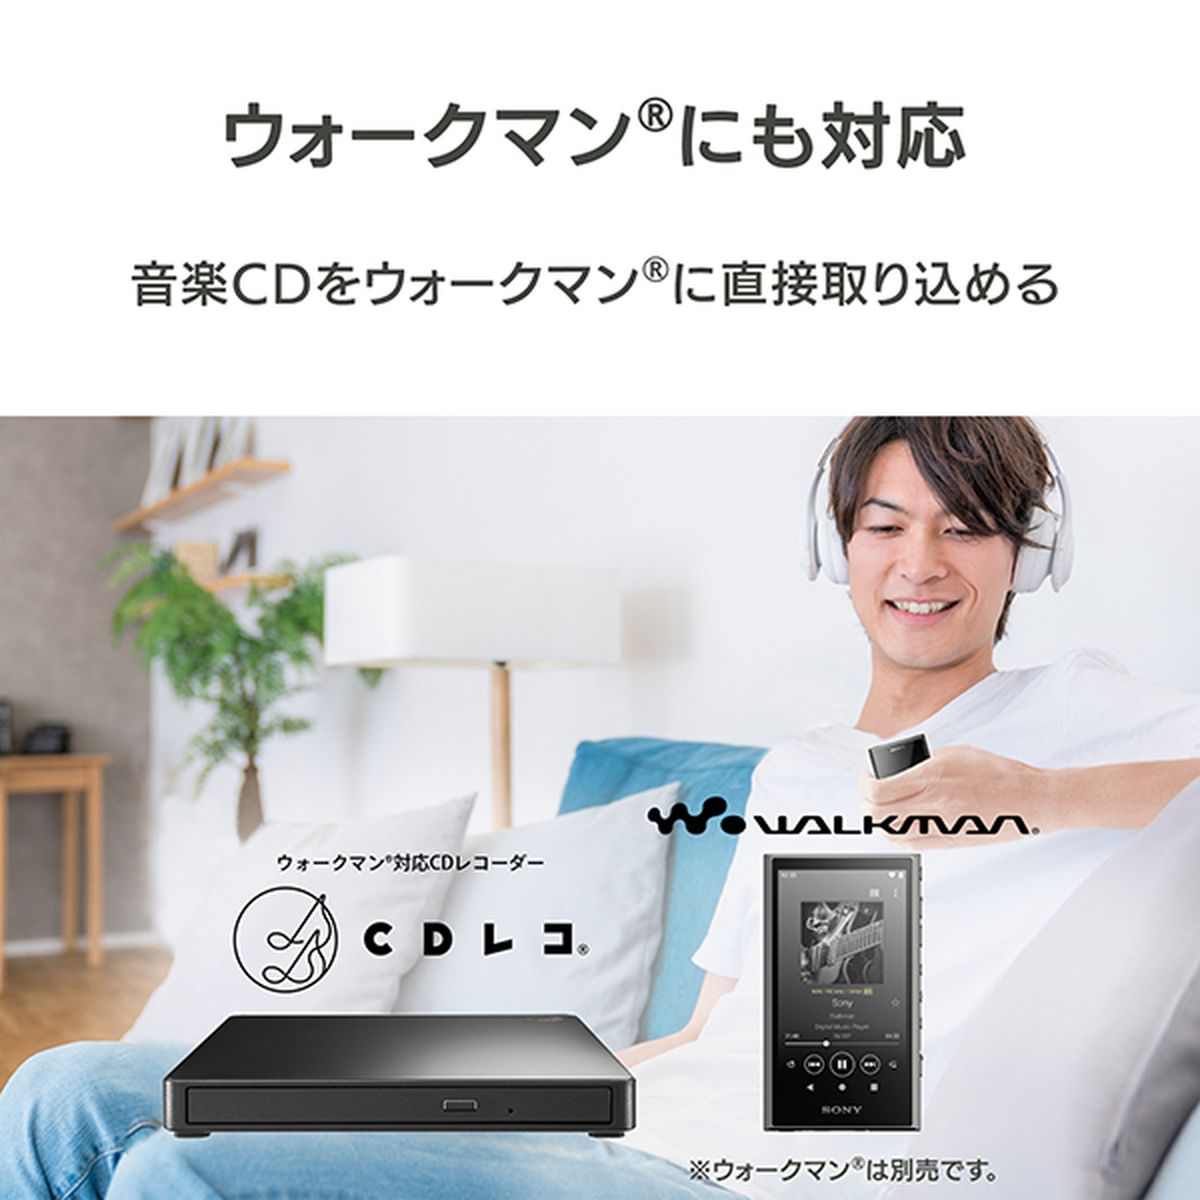 スマートフォン用CDレコーダー CDレコ6 ブラック Wi-Fi接続